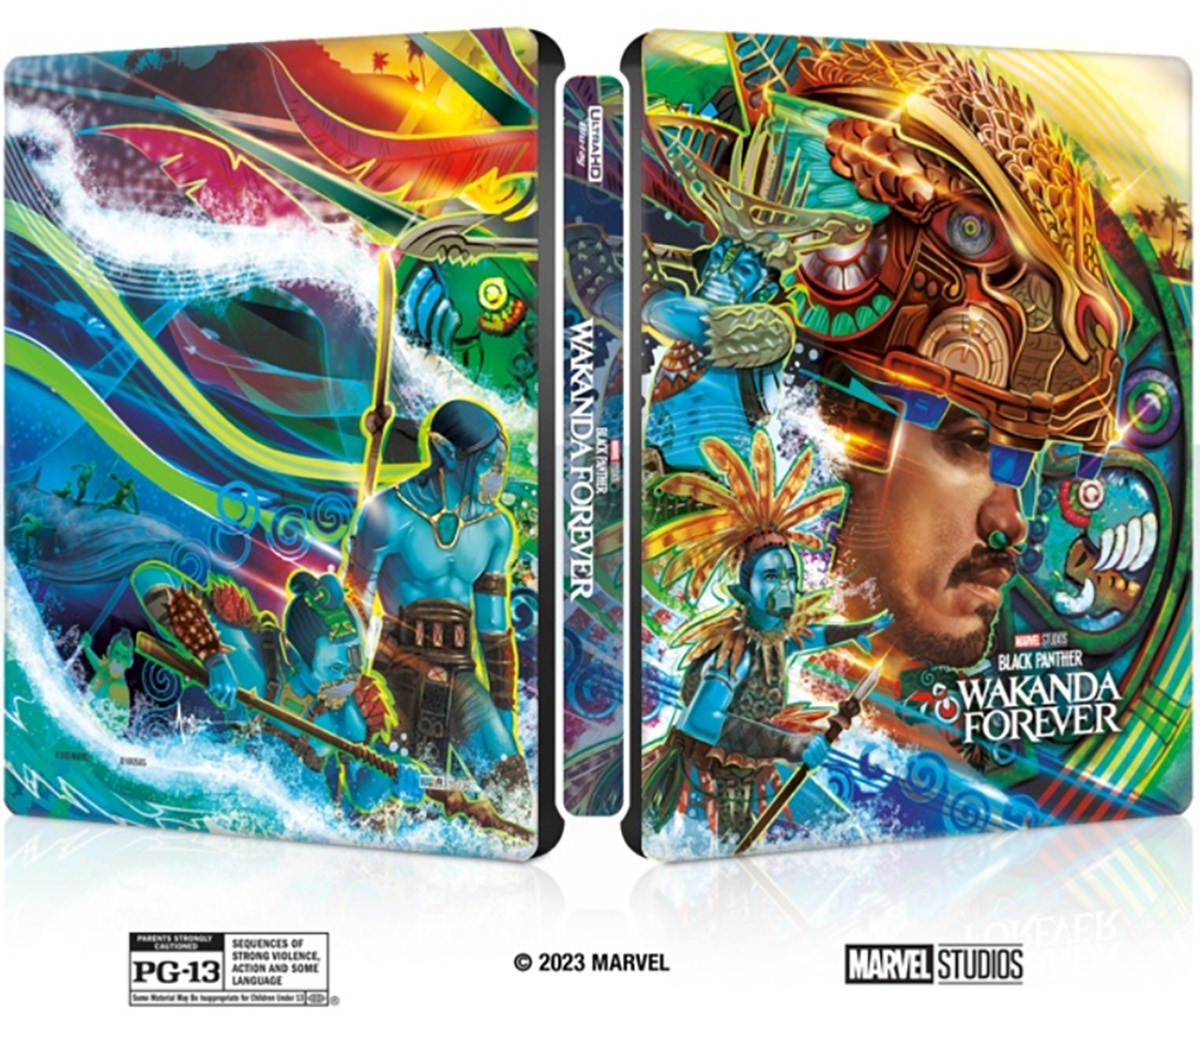 art digital illustration adobe illustrator vector Packaging zbyhp movie Azteca marvel dvd cover